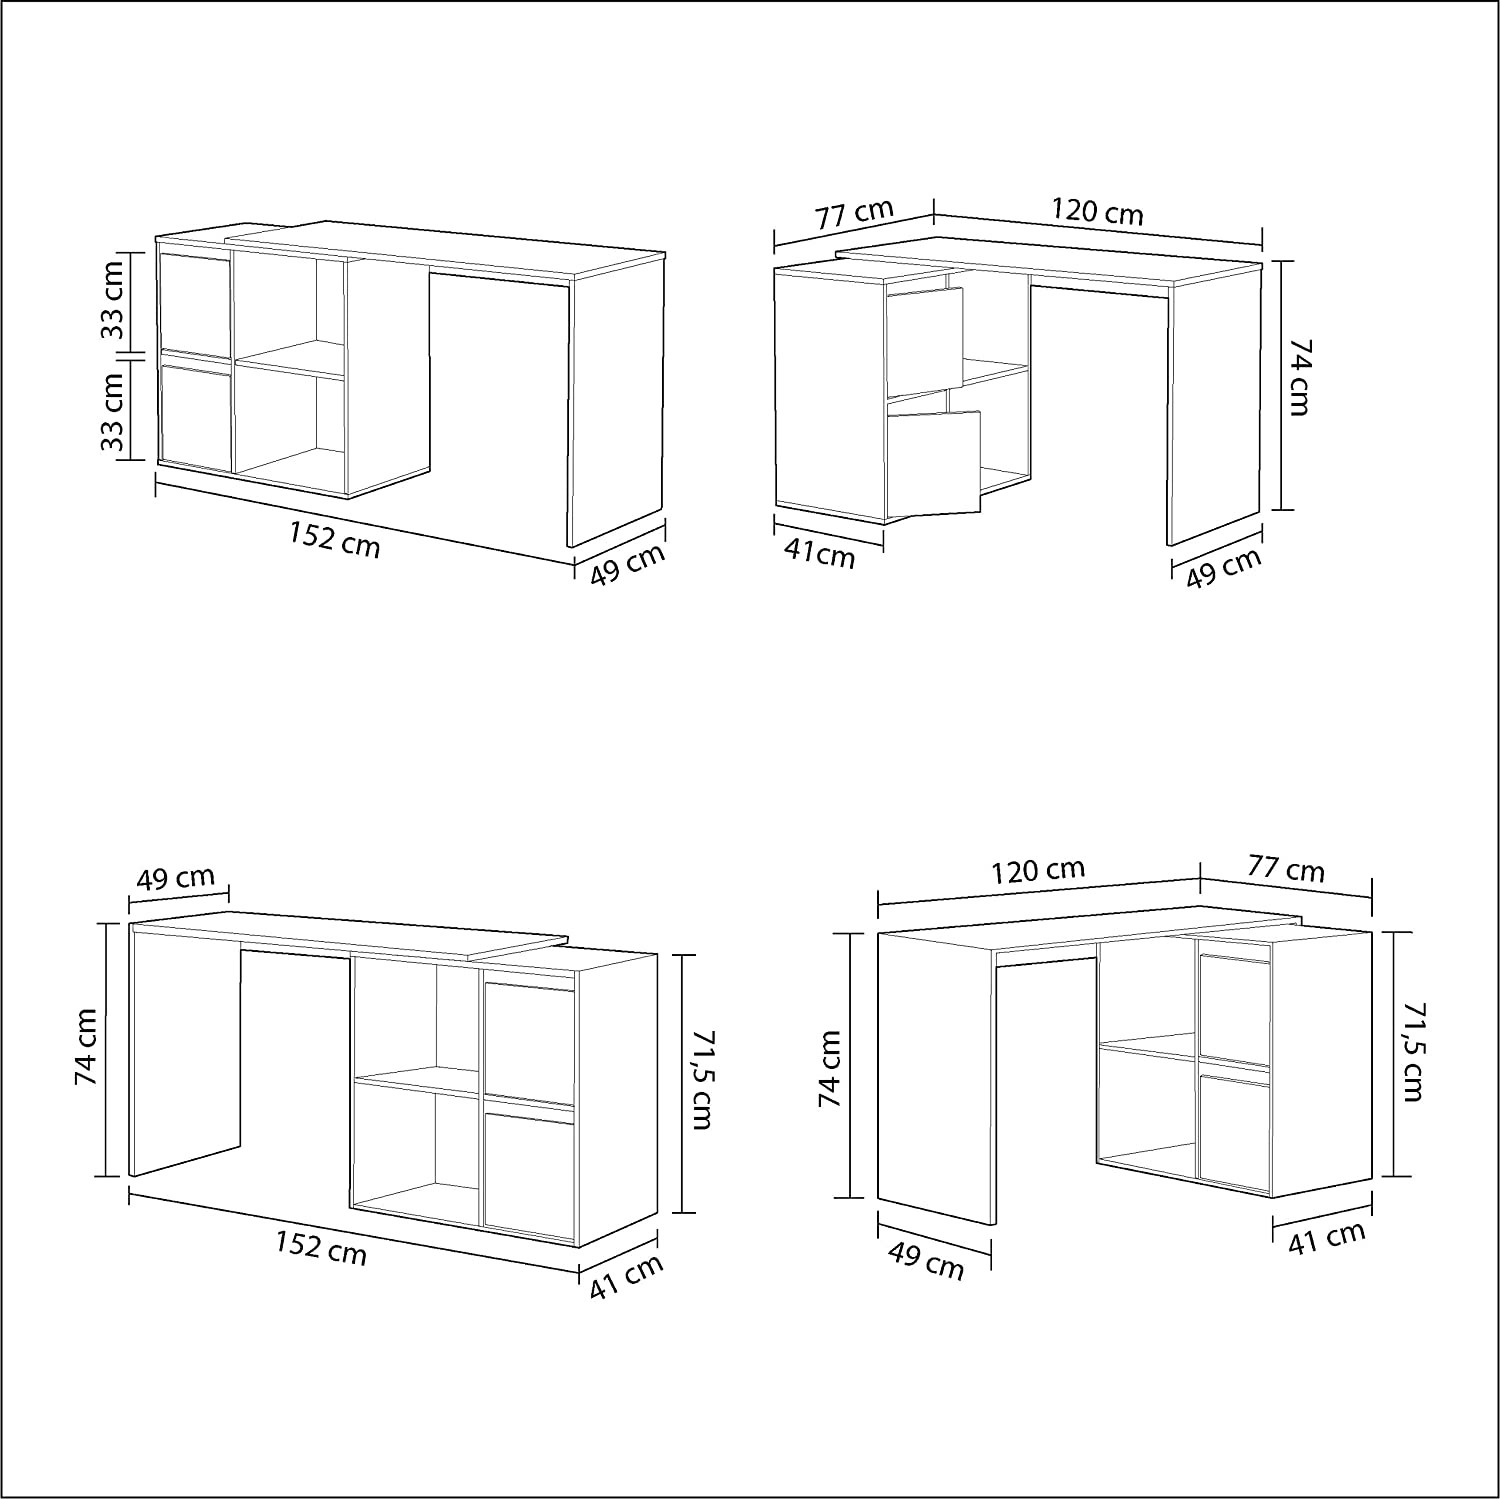 Escritorio modular de esquina con almacenaje - 4 posiciones de